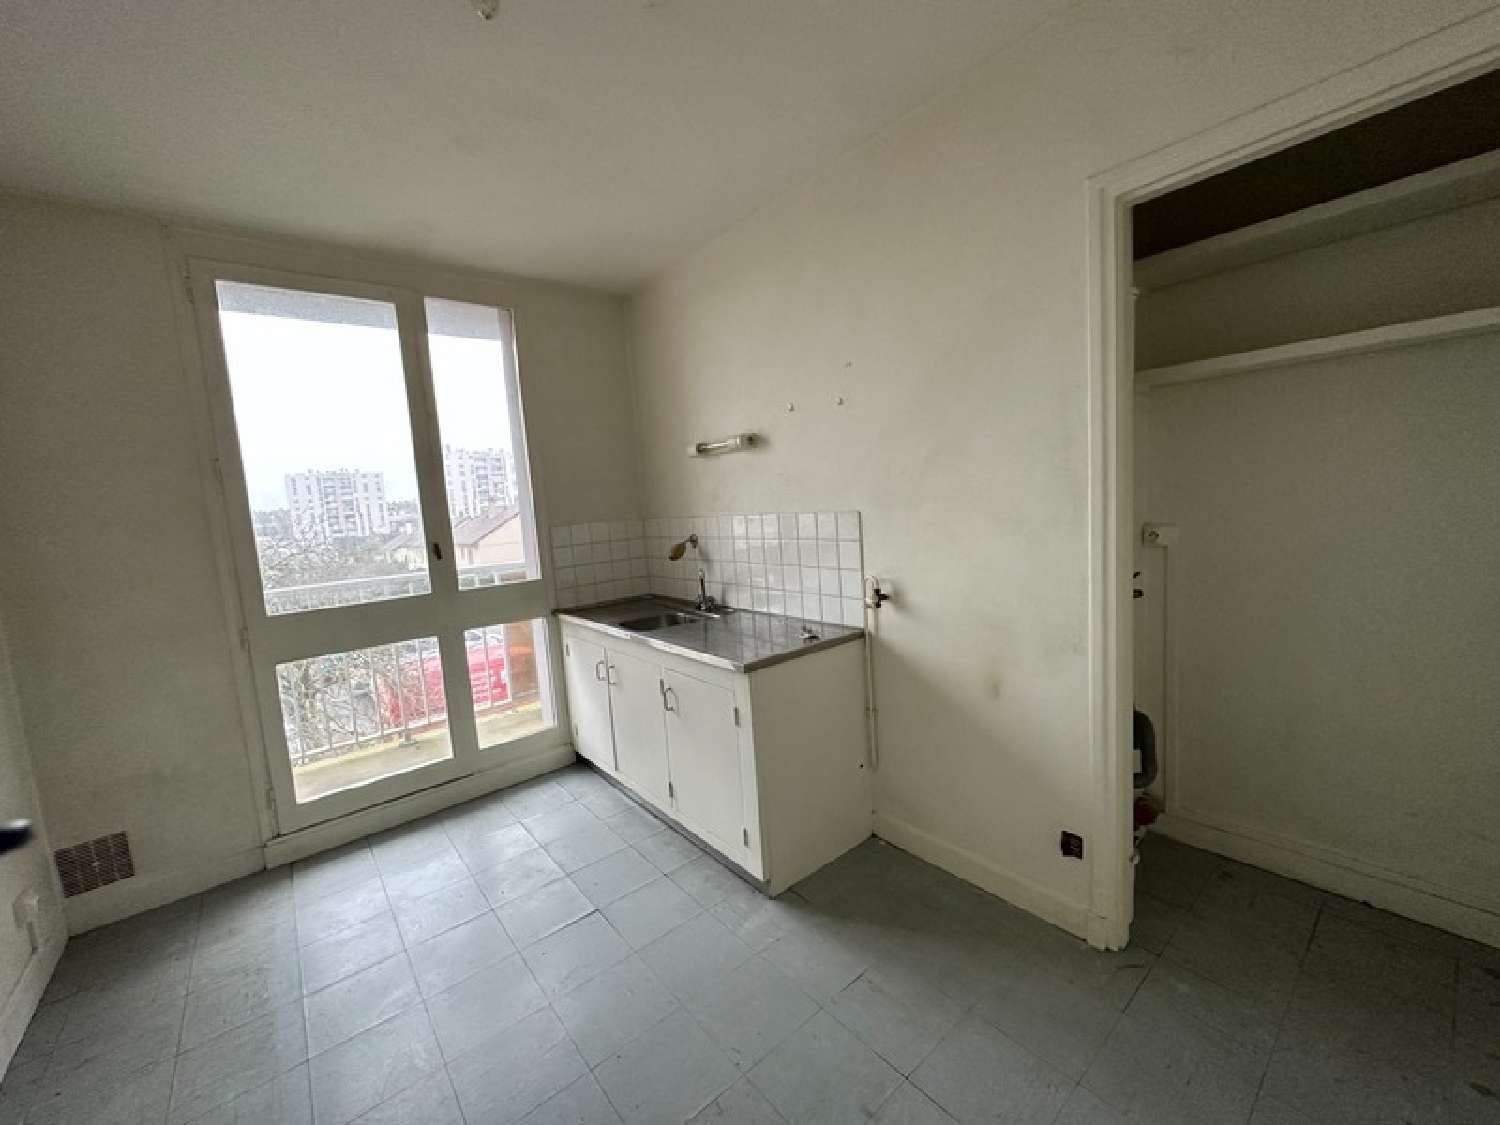  for sale apartment Saint-Lô Manche 3